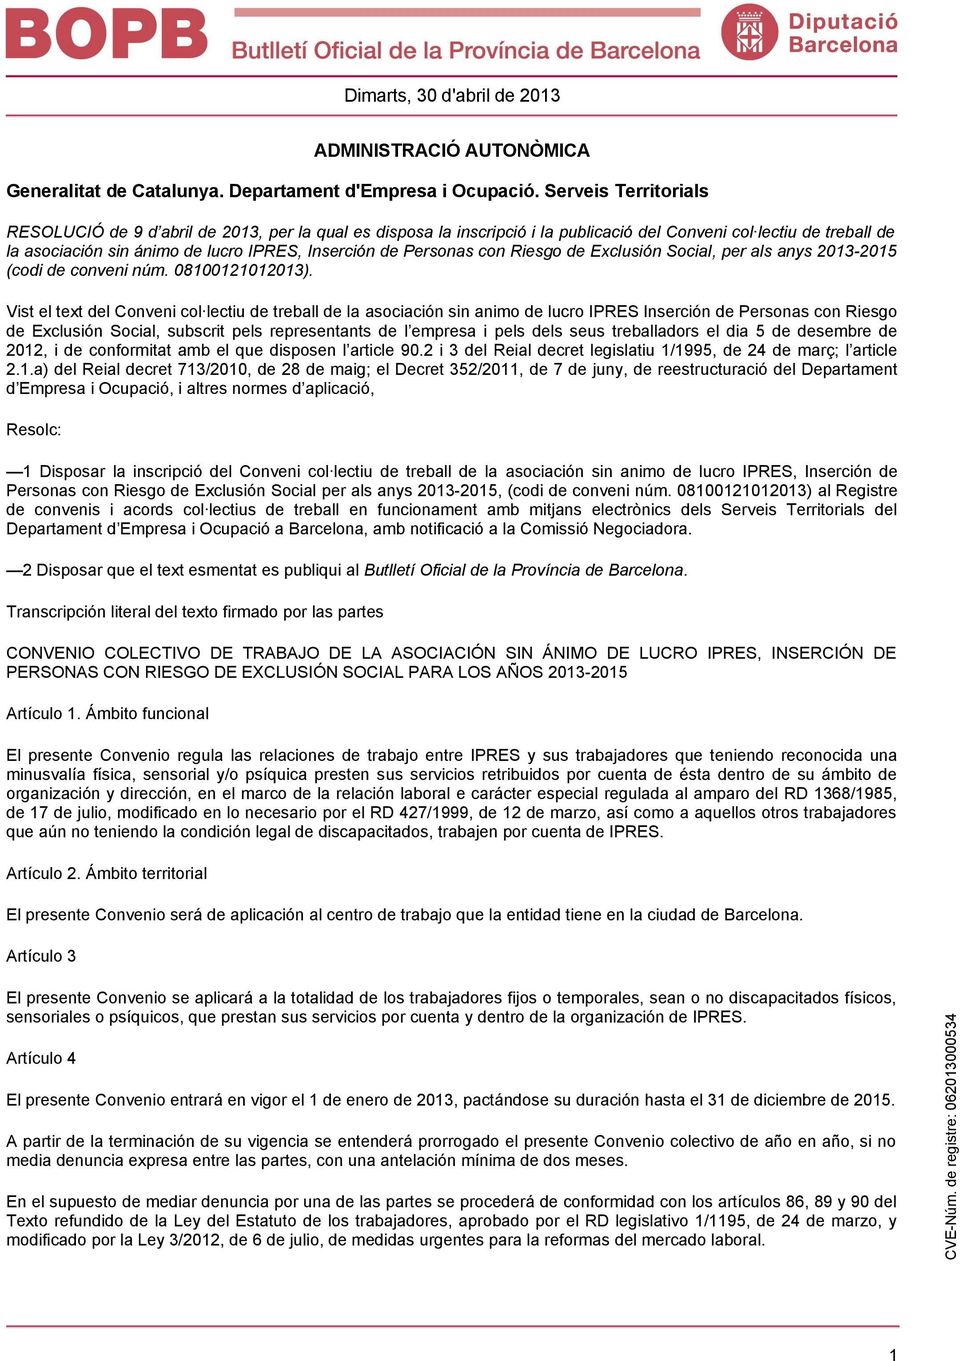 Personas con Riesgo de Exclusión Social, per als anys 2013-2015 (codi de conveni núm. 08100121012013).